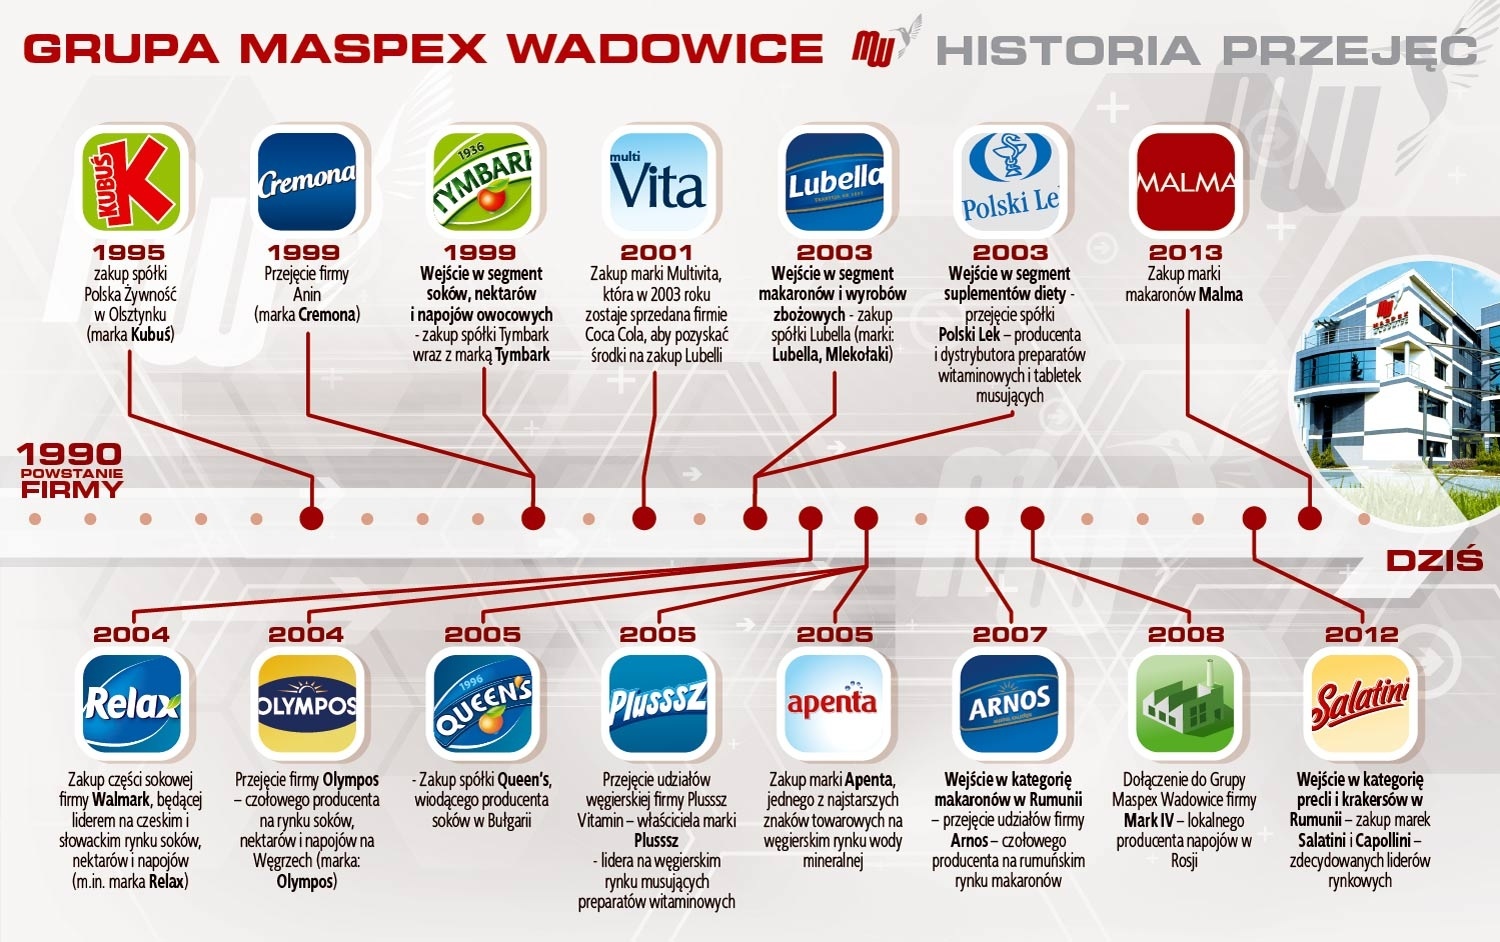 Historia przejęć dokonanych przez Maspex Wadowice